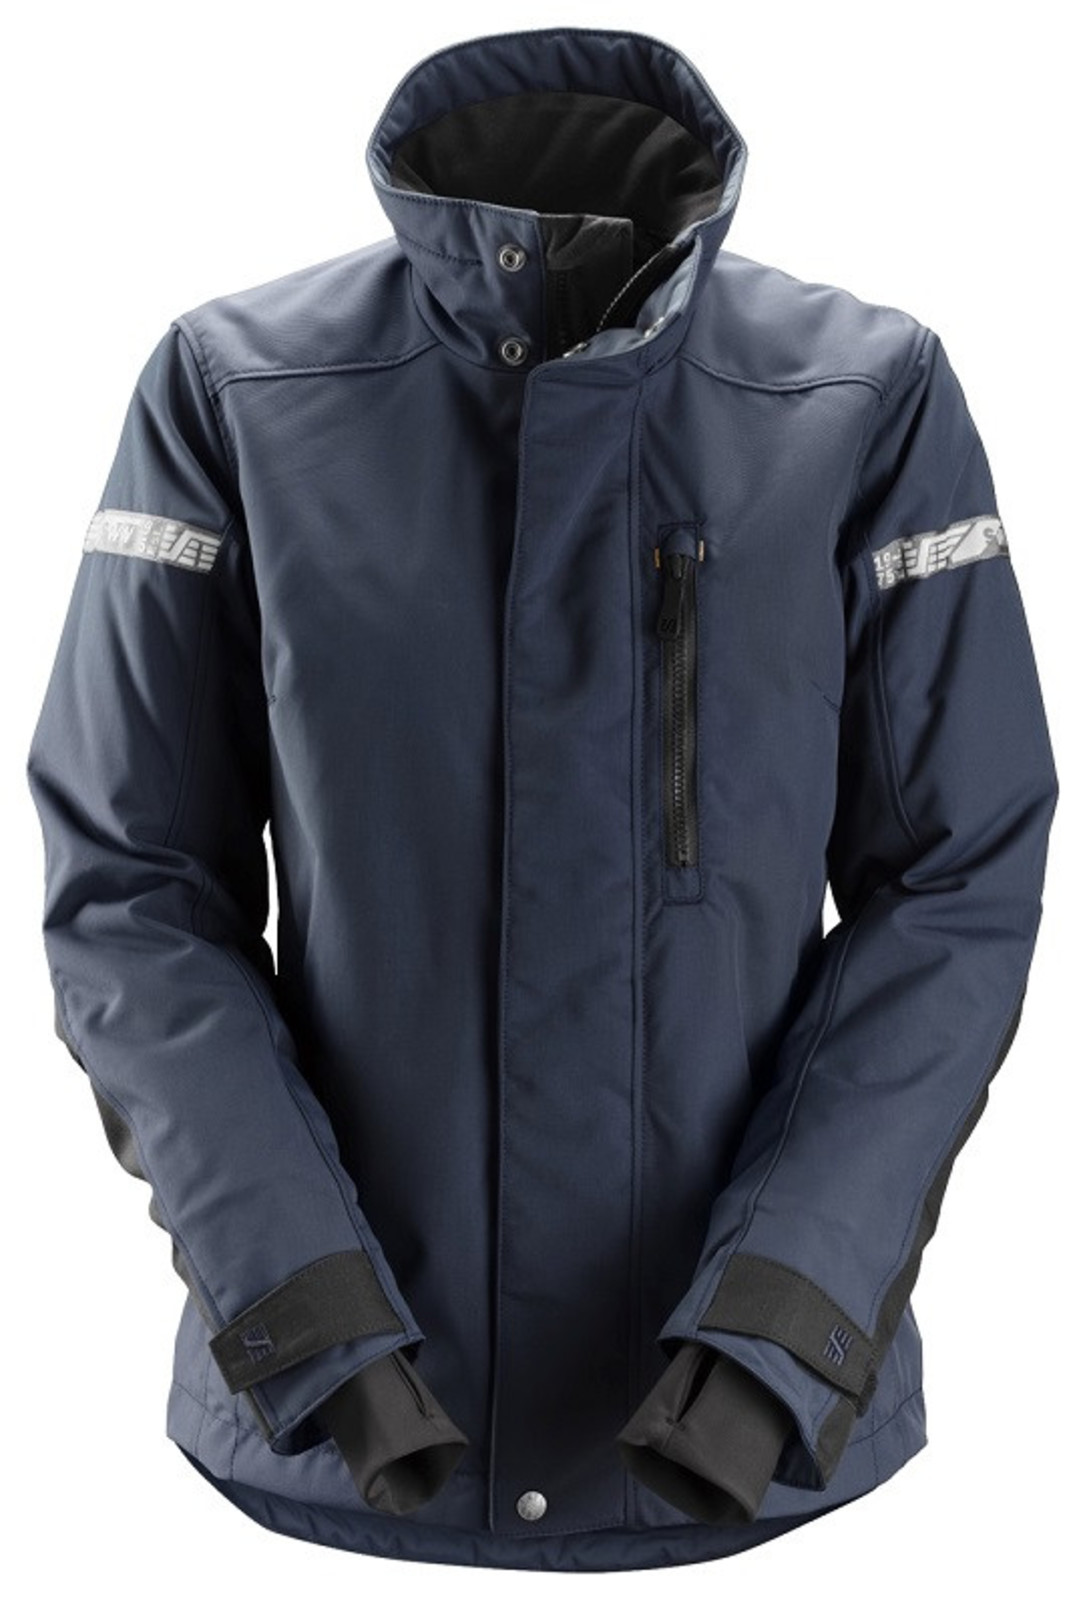 Dámska zimná bunda Snickers® AllroundWork 37.5® - veľkosť: L, farba: navy